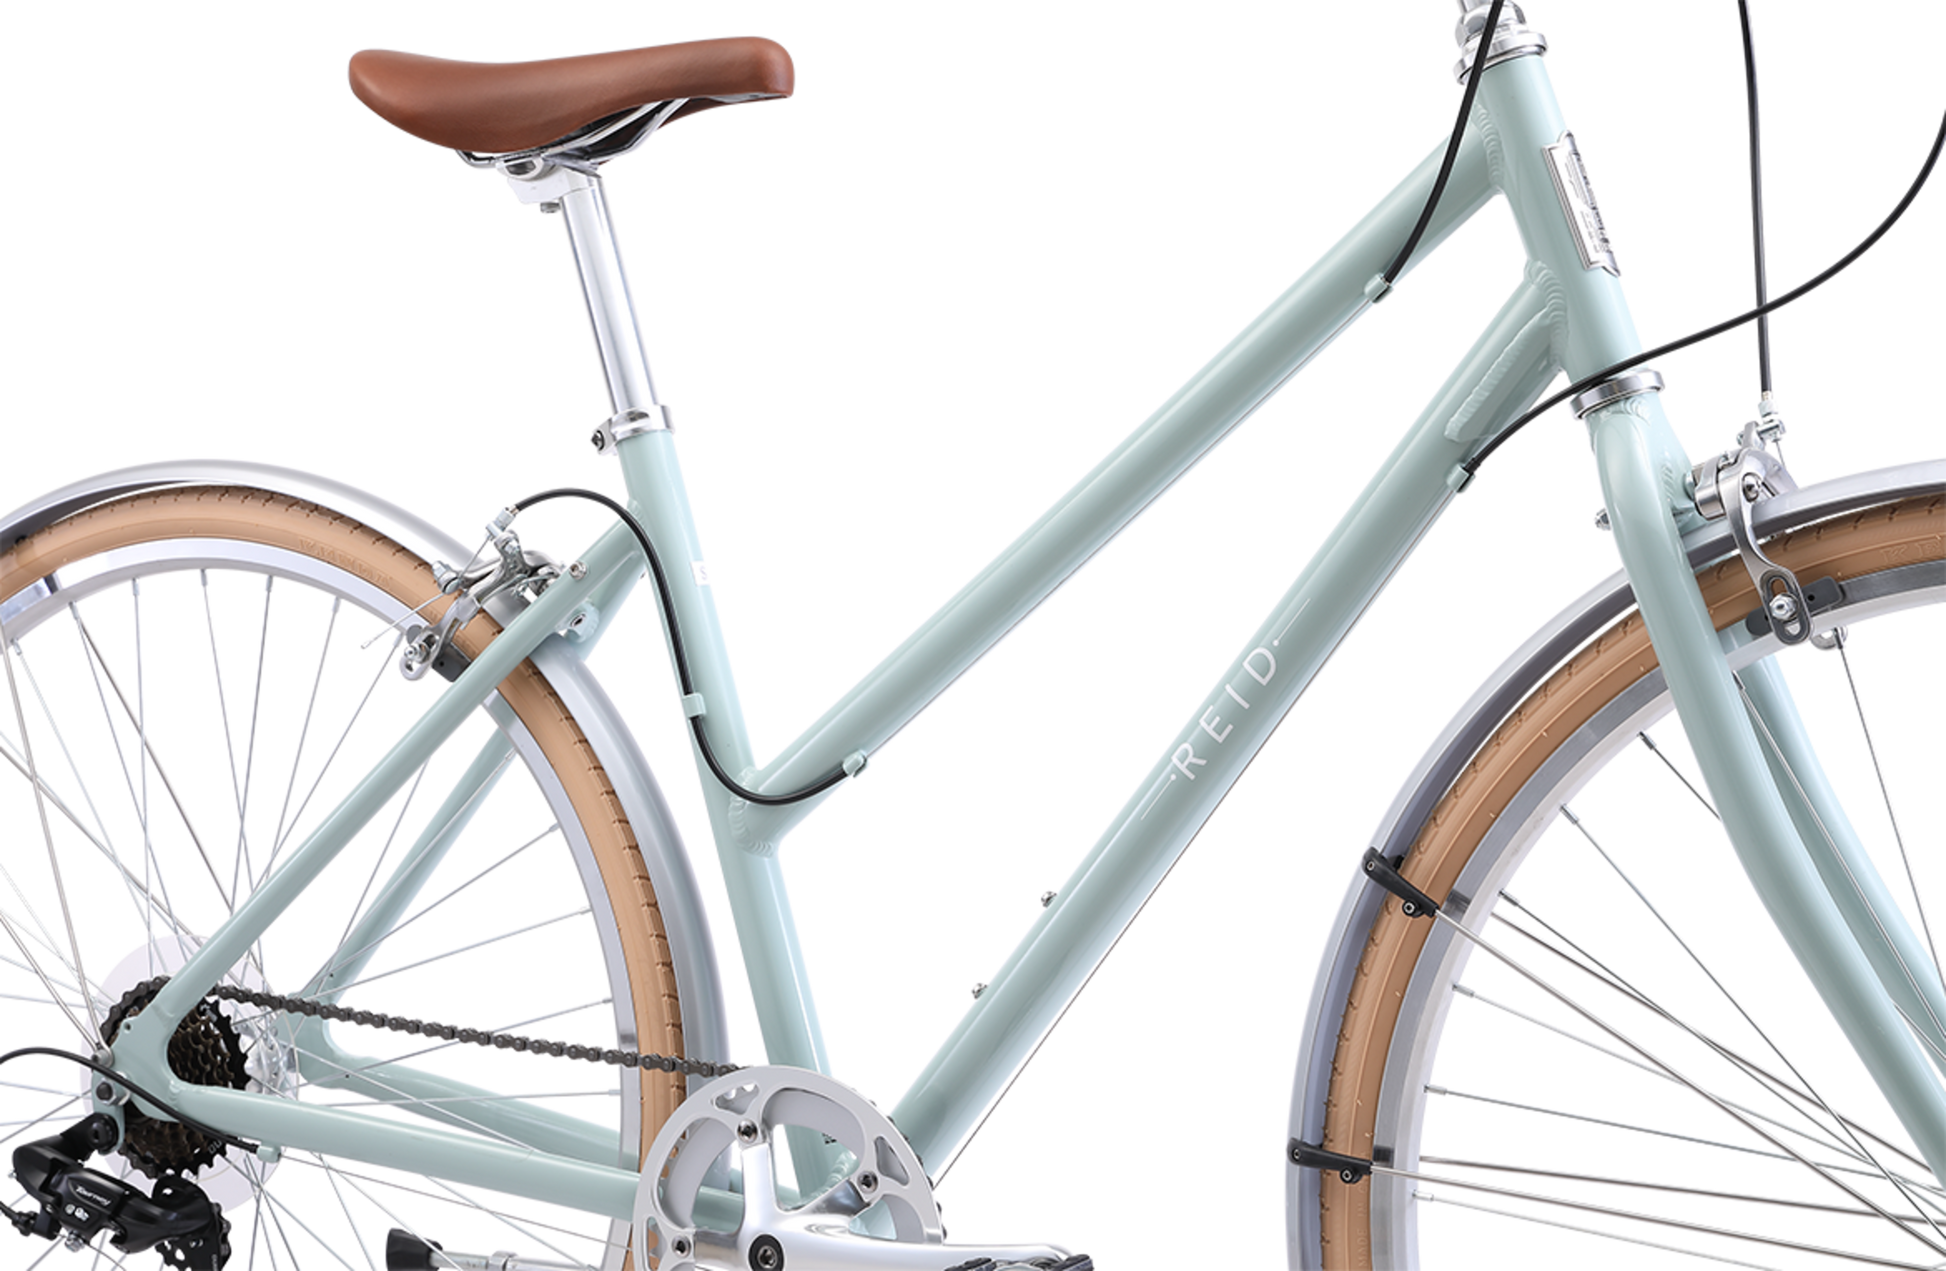 Ladies Esprit Superlite Vintage bike in Sage showing Reid logo on the downtube from Reid Cycles Australia